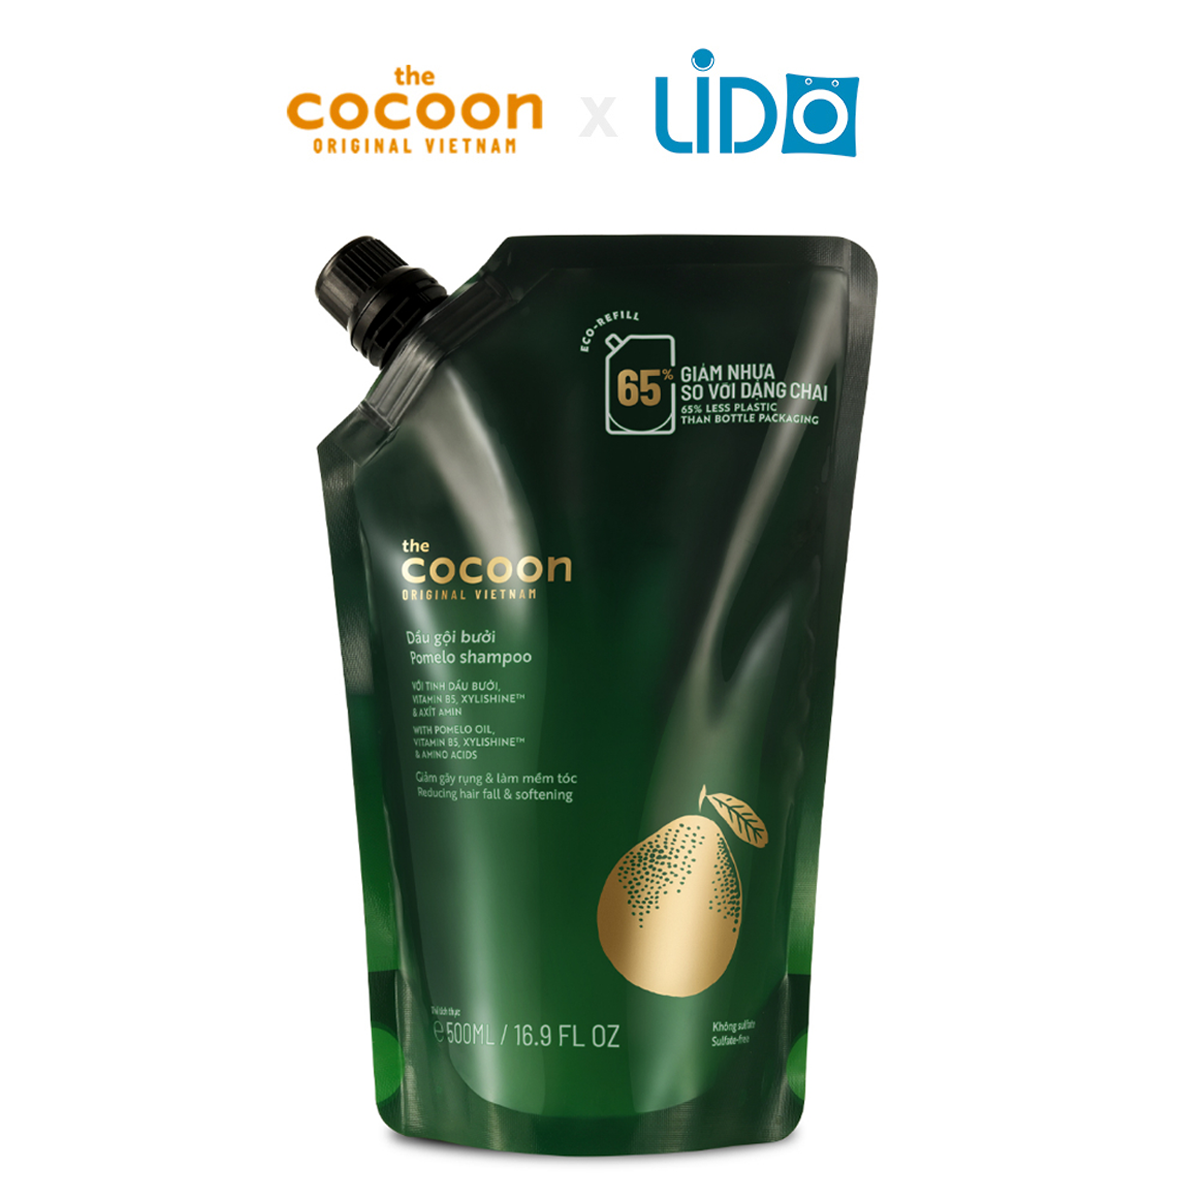 Túi Refill - Dầu gội bưởi Cocoon giúp giảm gãy rụng và làm mềm tóc 500ml